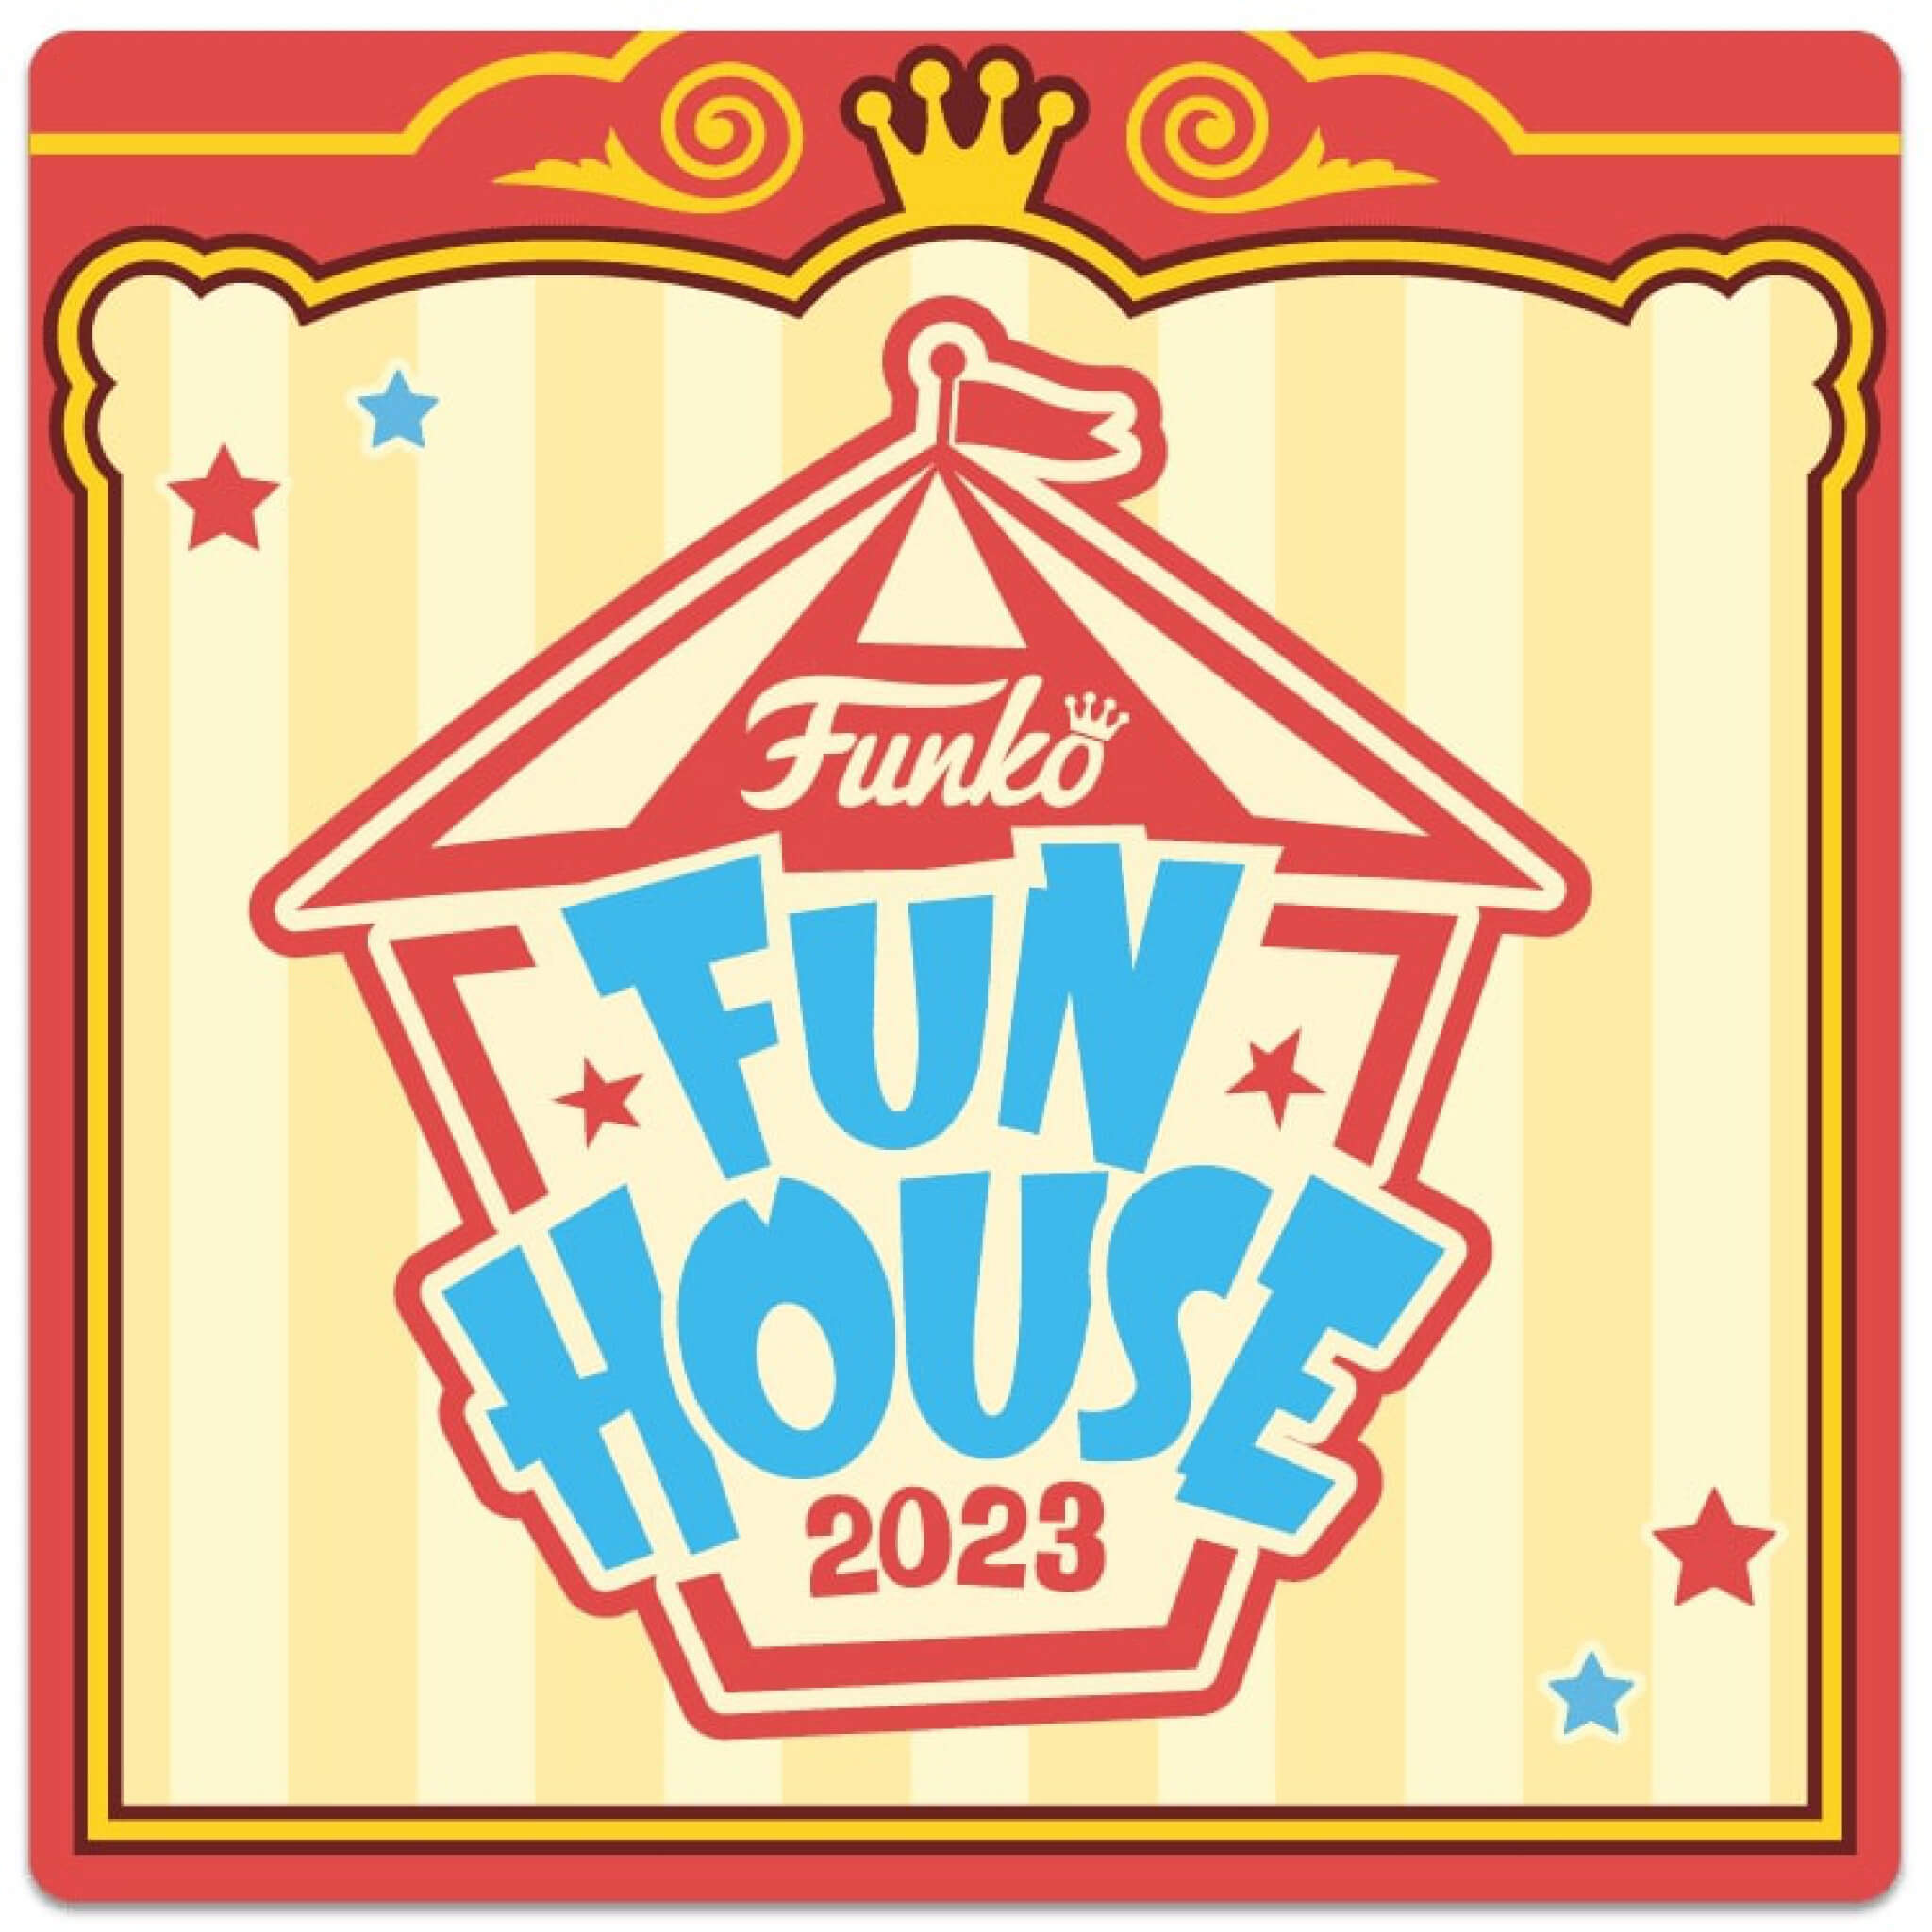 Funko WonderCon 2023 Announcements